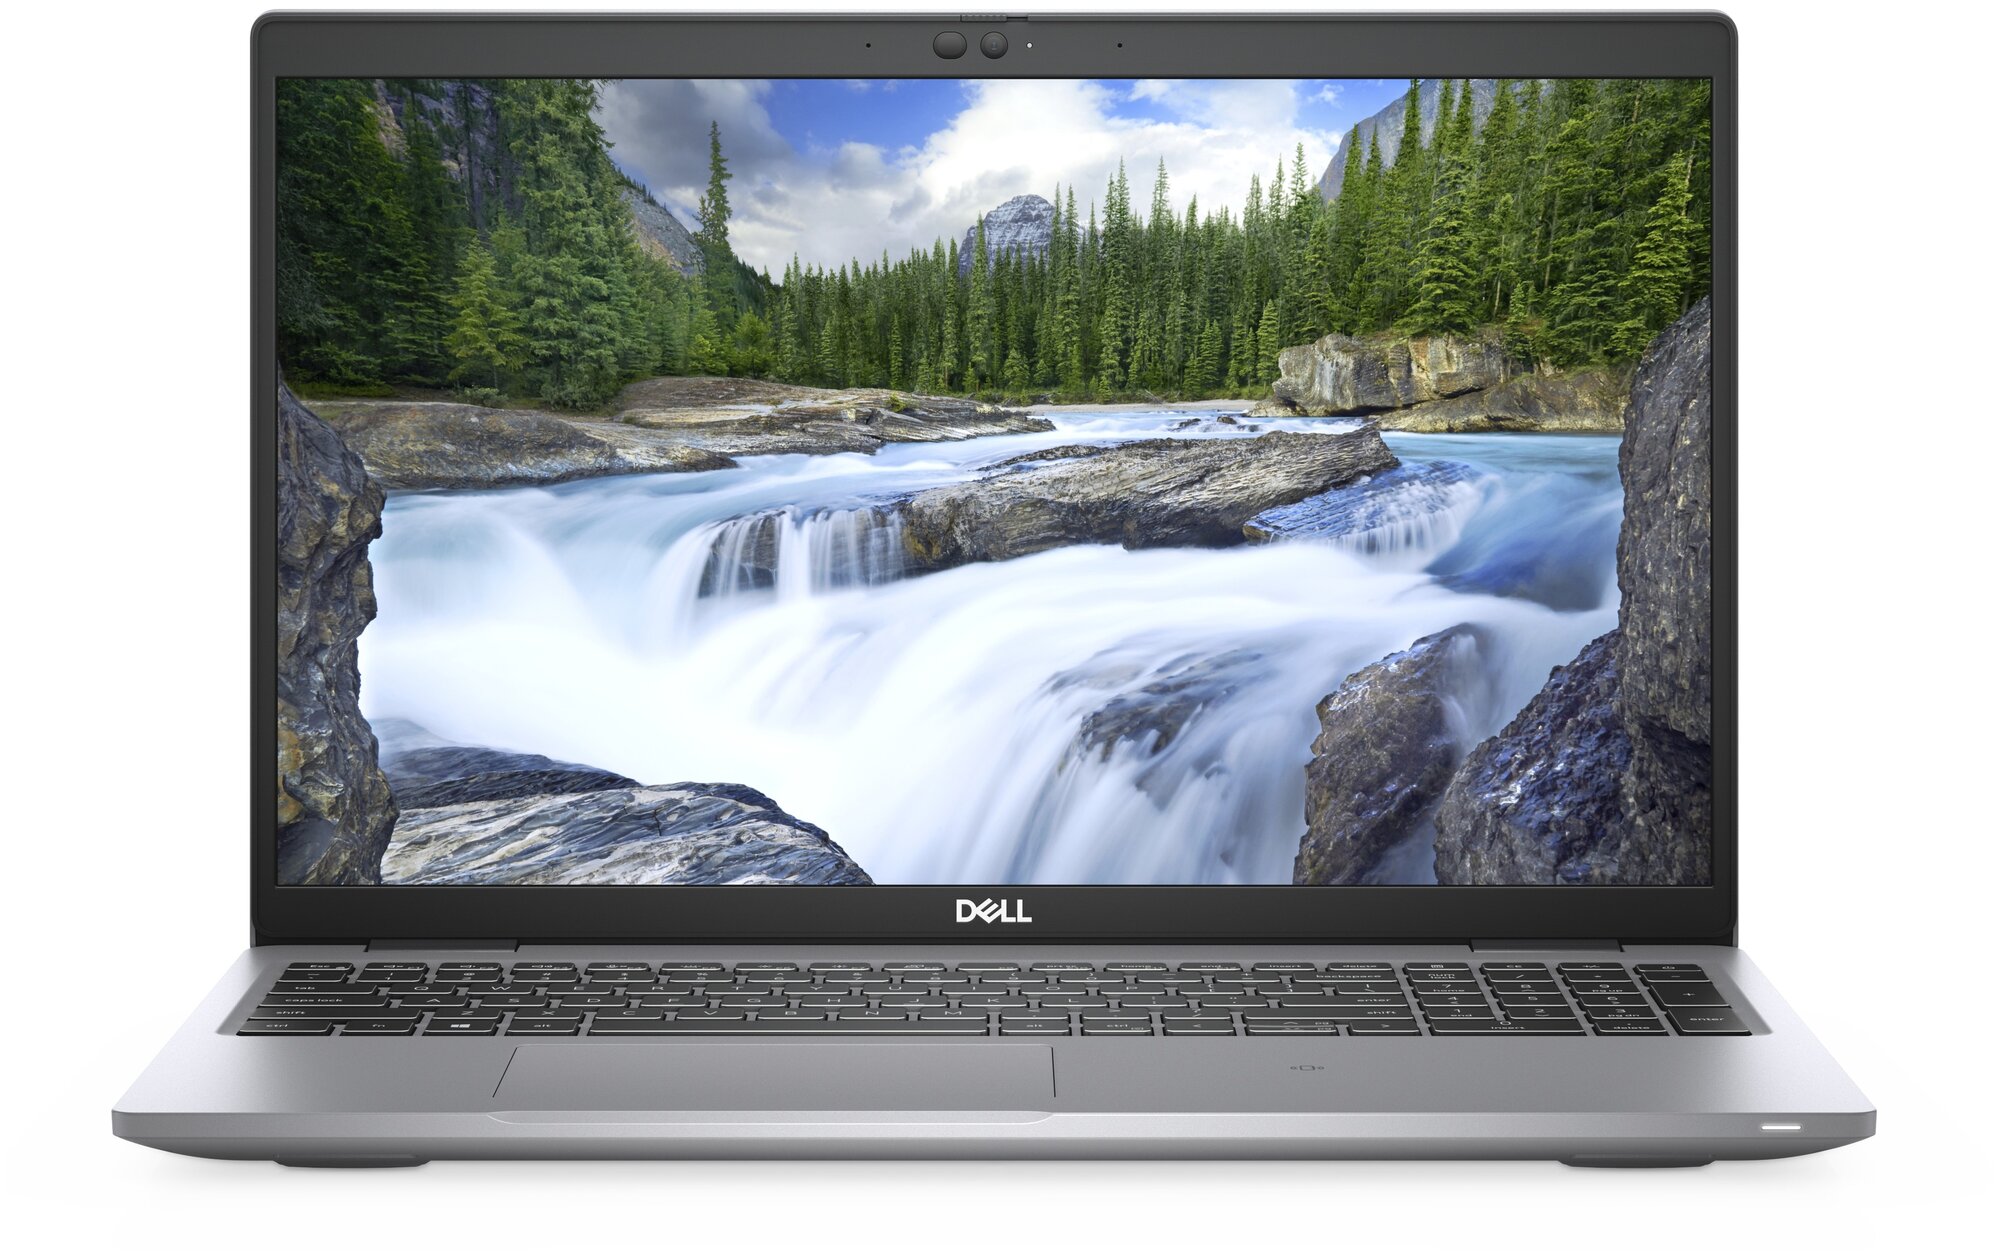 Ноутбук Dell Latitude 5520 6XYRX (Intel Core i5-1135G7 2.4GHz/8192Mb/256Gb SSD/Intel Iris Xe Graphics/Wi-Fi/Bluetooth/Cam/15.6/1920x1080/Windows 10 Pro)